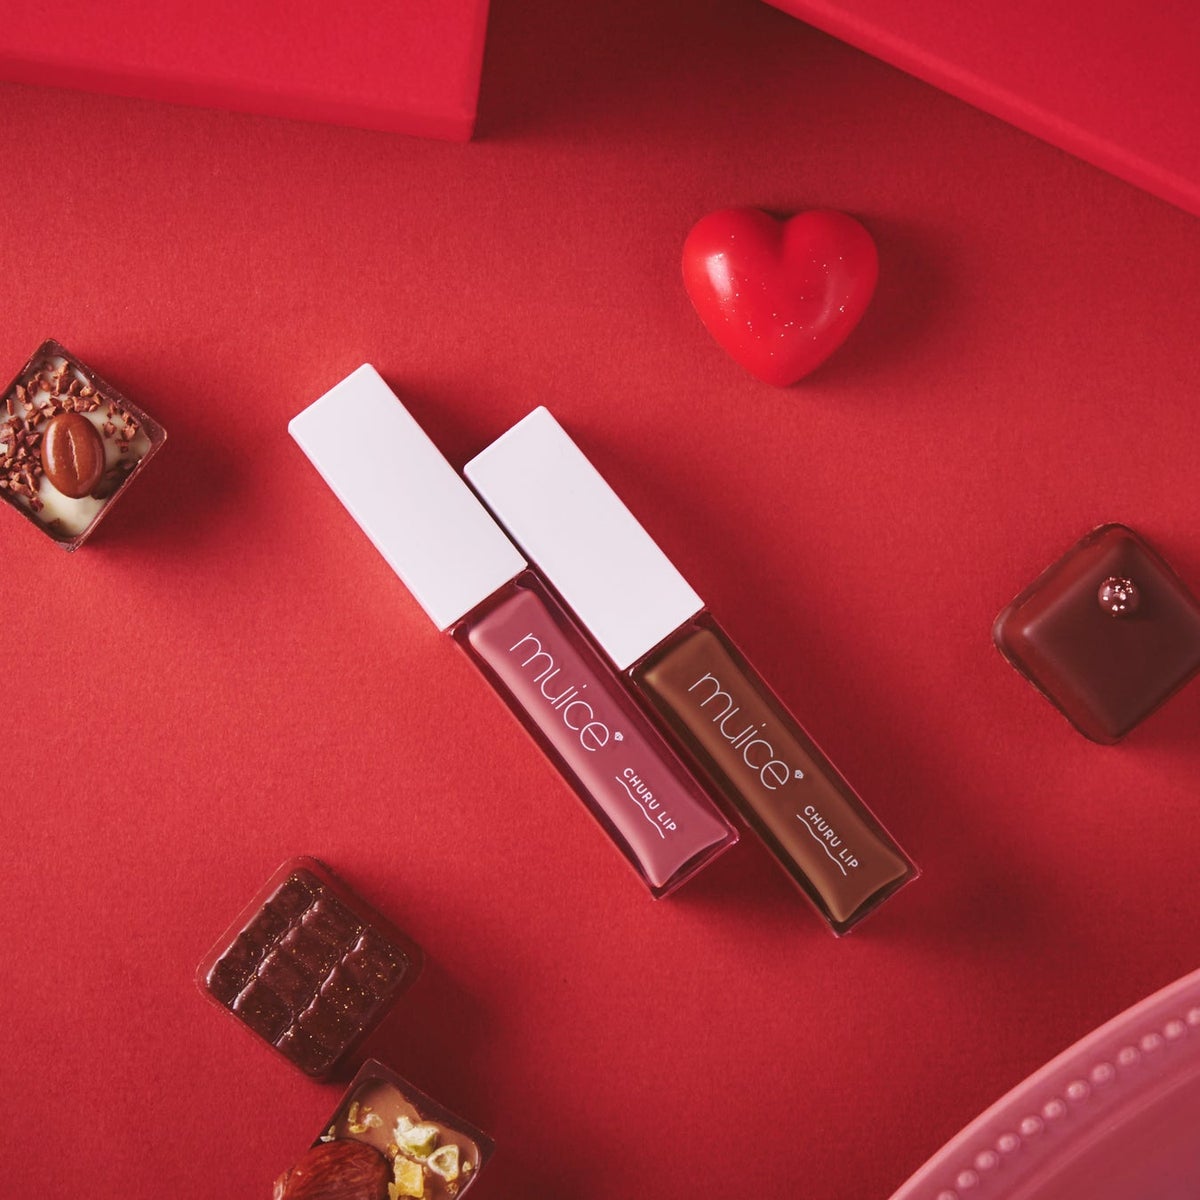 muiceから濃厚なチョコレートカラーのバレンタインコスメが登場の画像